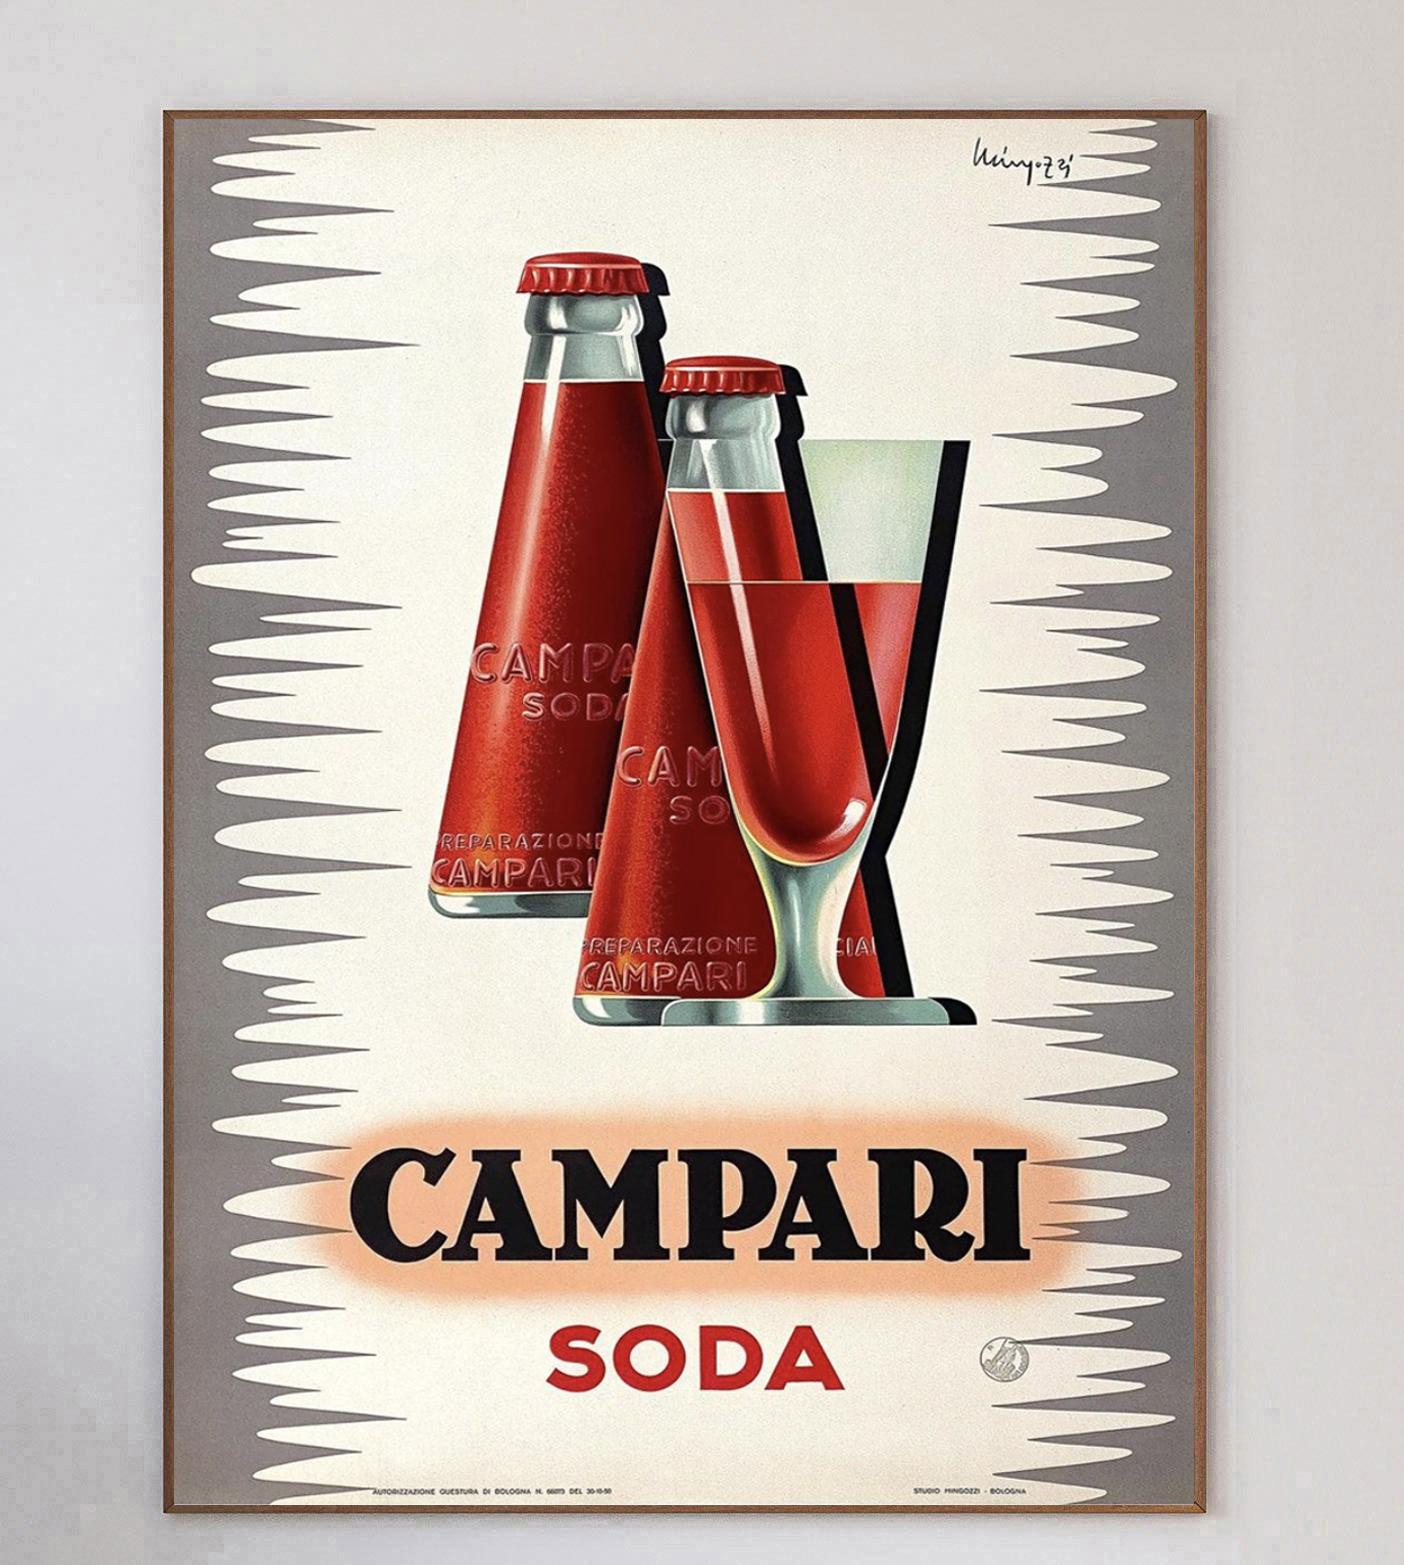 Stunning poster designed by Italian artist Giovanni Mingozzi for Campari Soda, created in 1950. This gorgeous and vibrant piece depicts the Campari Soda bottle designed by Futurist artist Fortunato Depero. 

Iconic Italian liqueur brand Campari